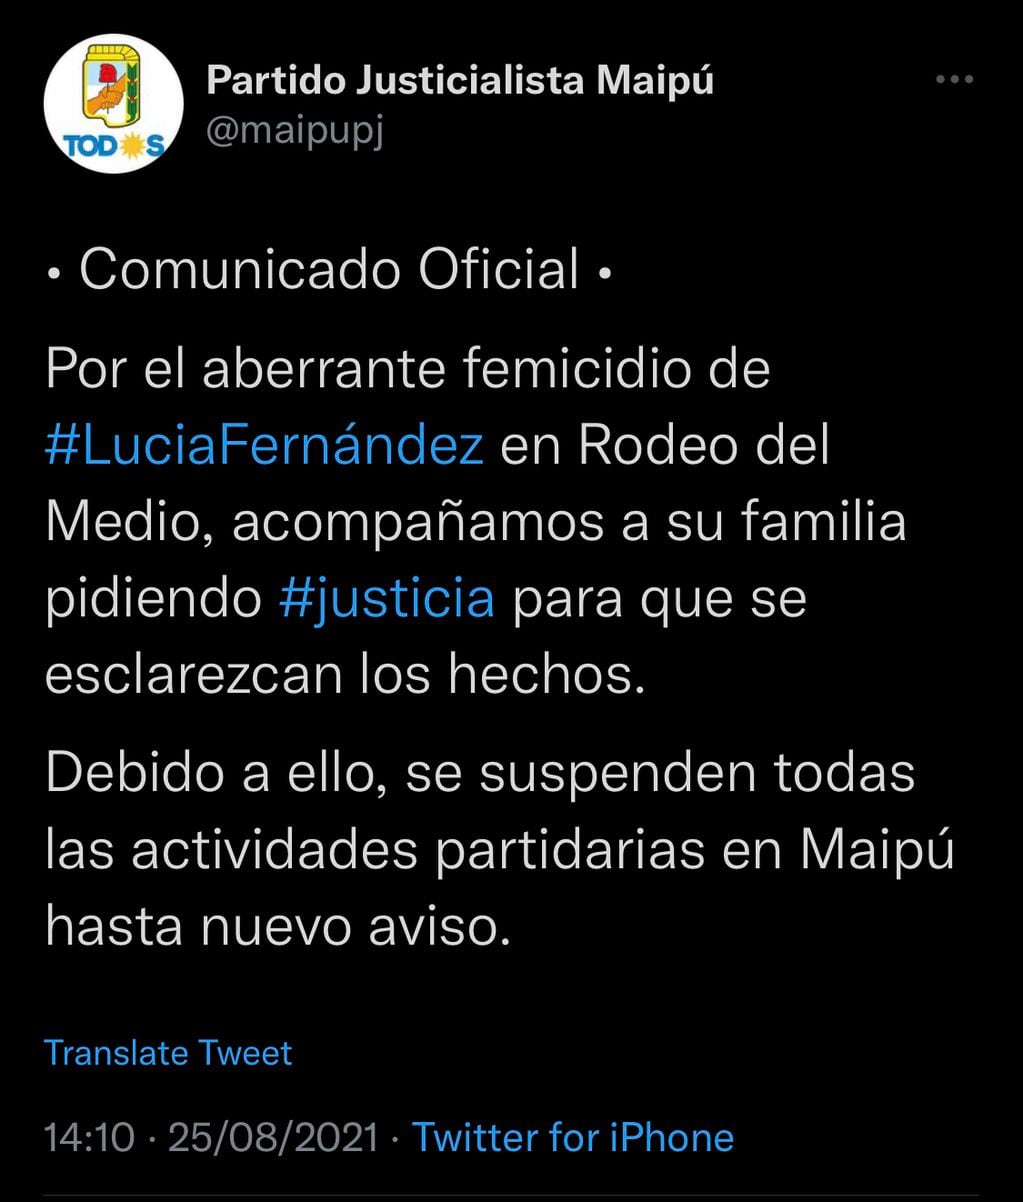 El tweet del PJ por el femicidio de Lucía Fernández.